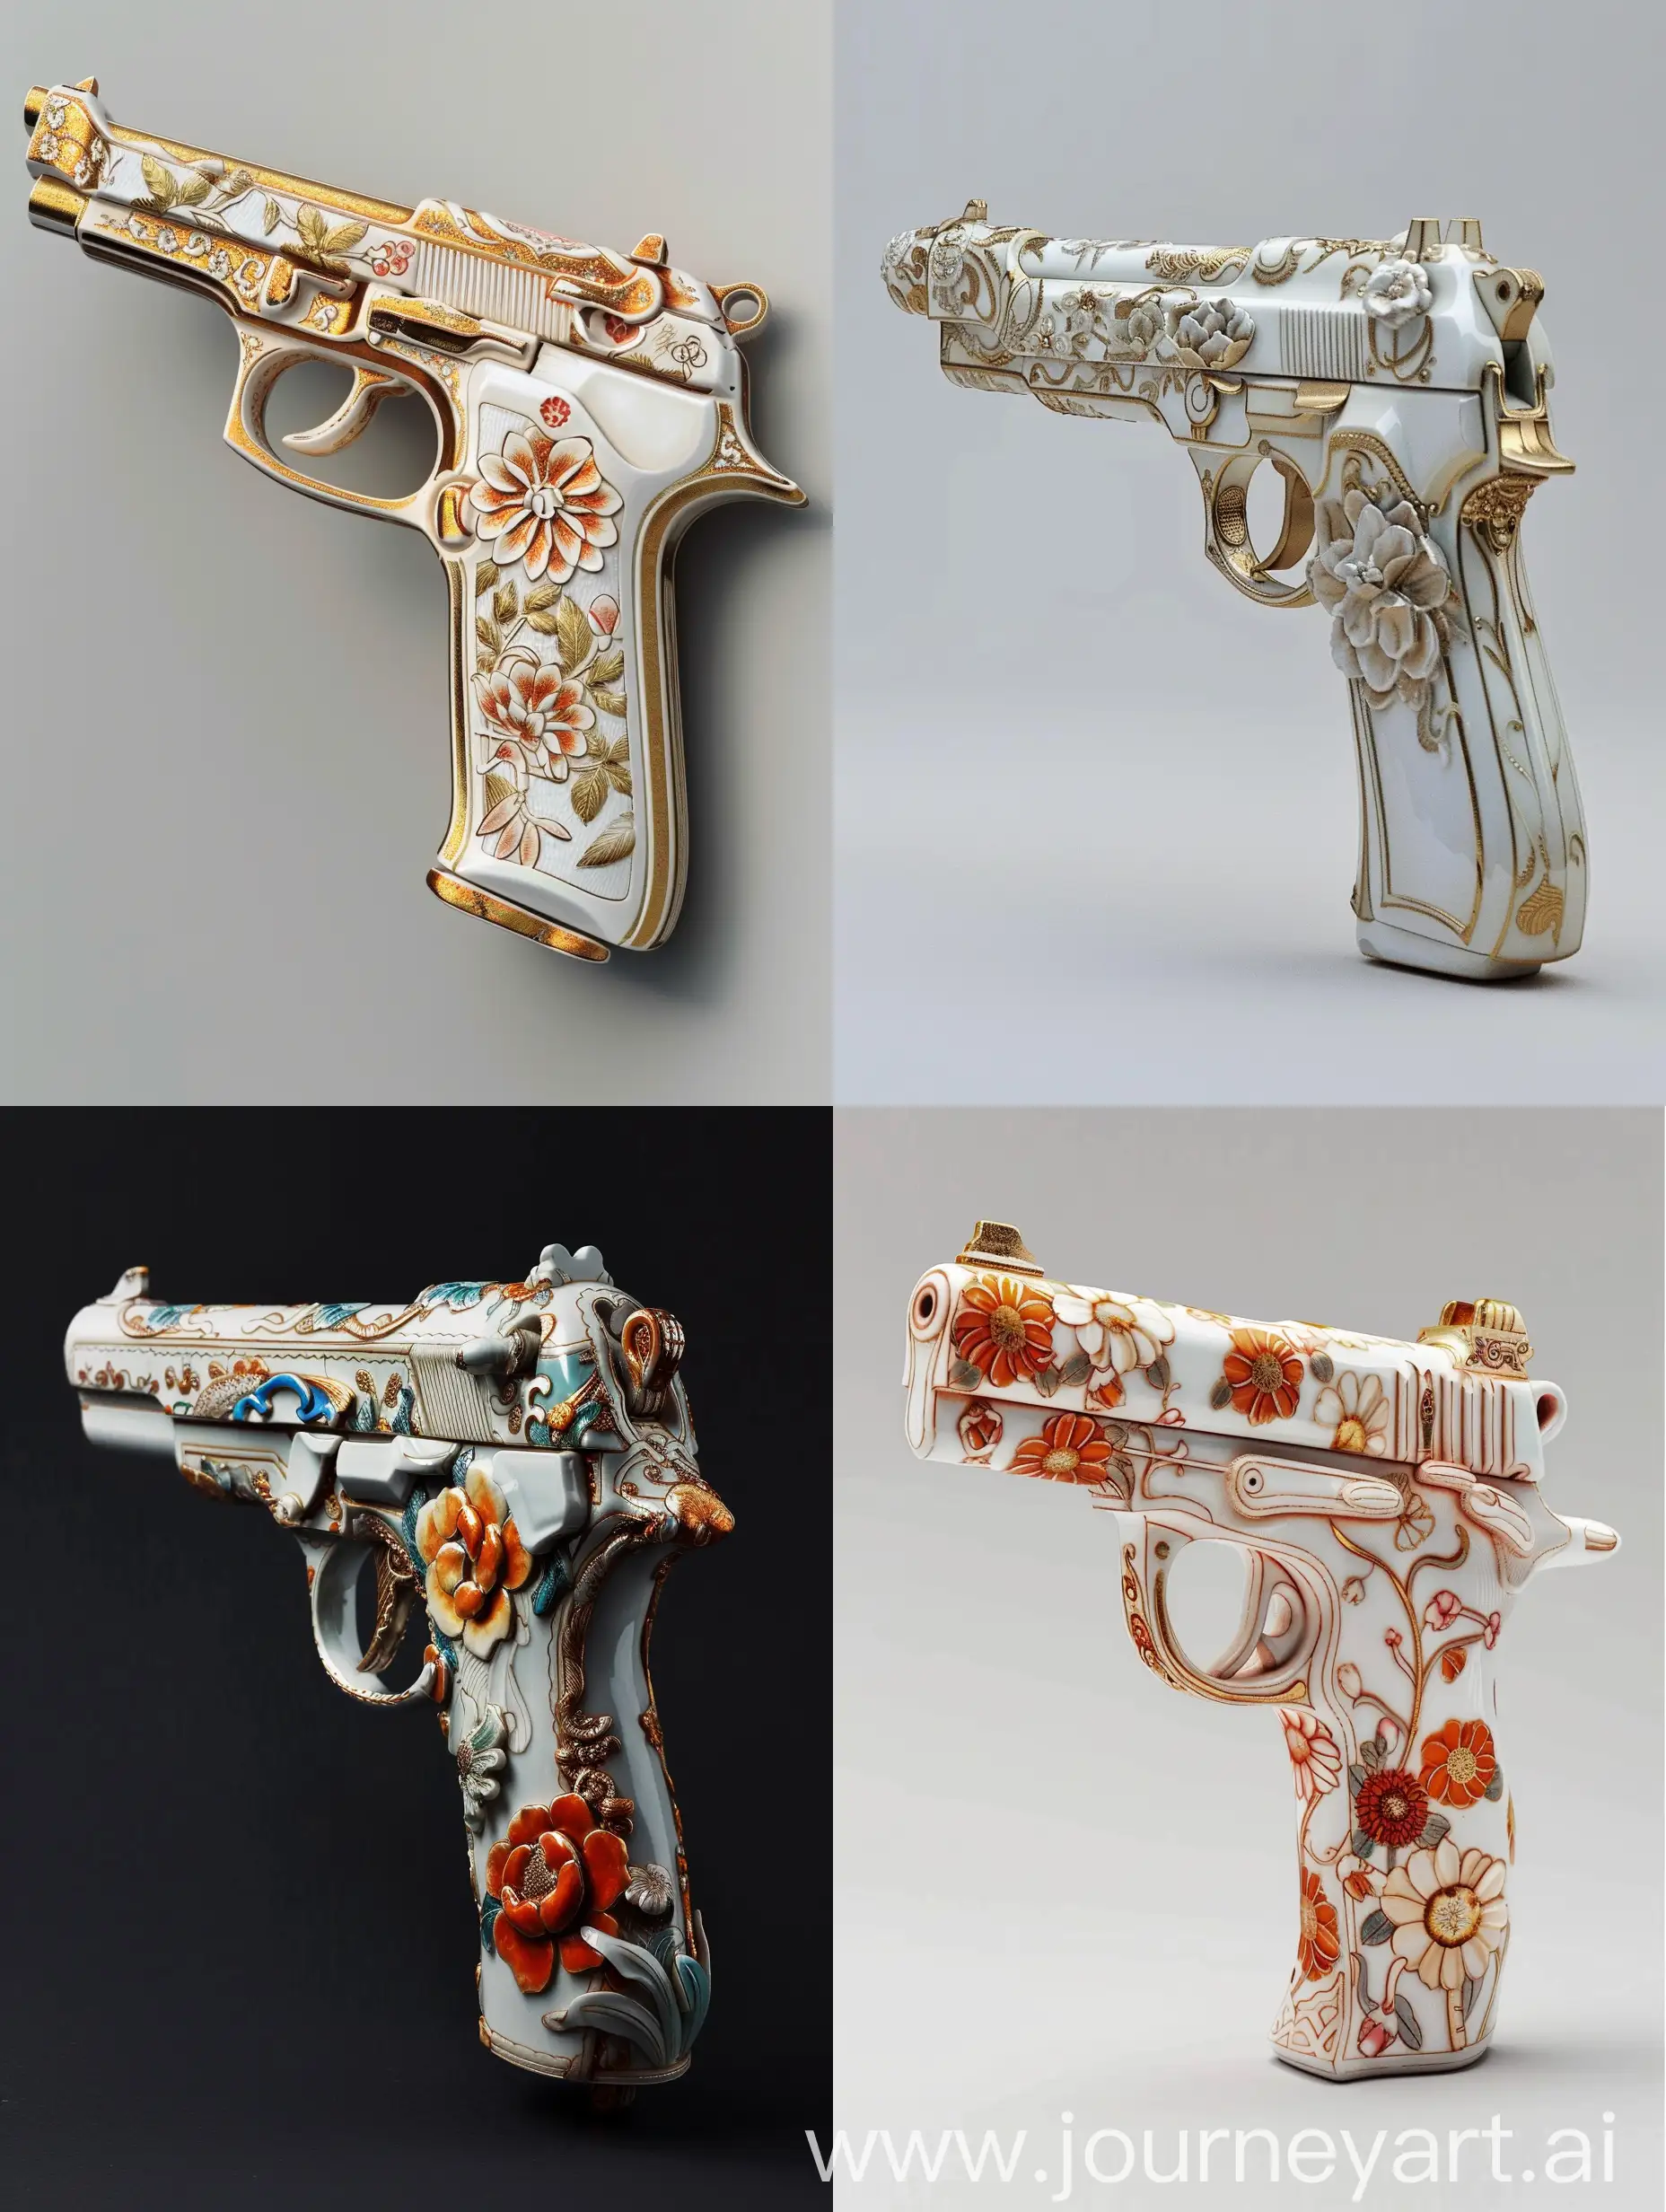 Porcelain-Kutani-Style-Gun-Hyper-Realistic-3D-Museum-Exhibit